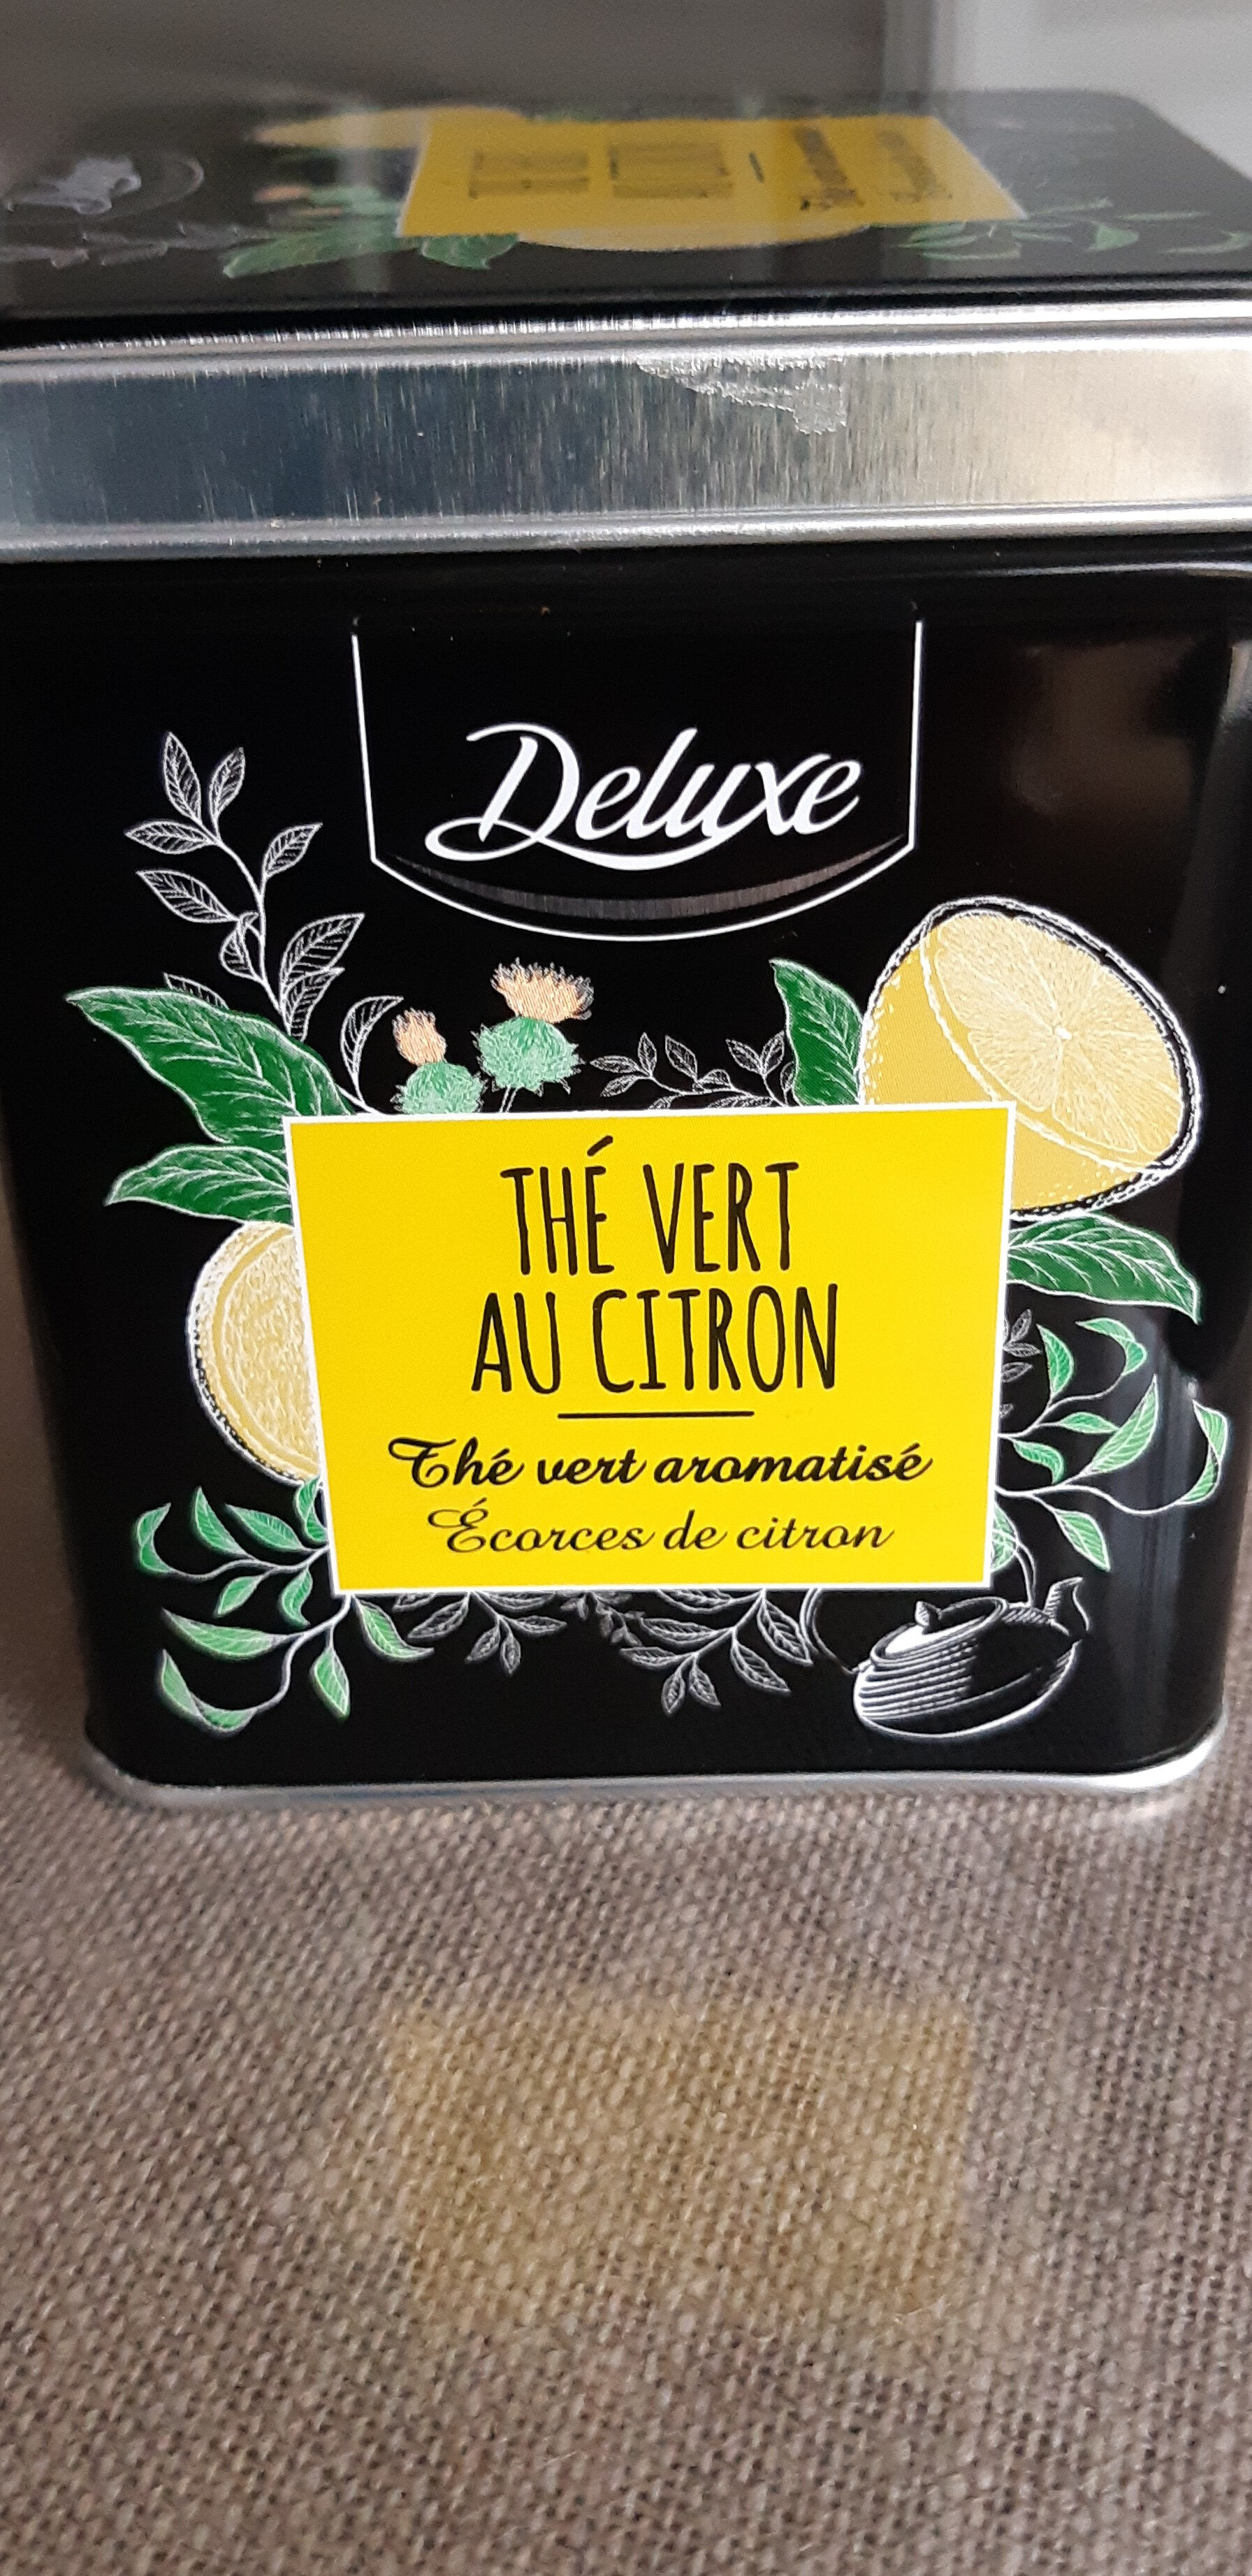 Thé vert au citron - Product - fr